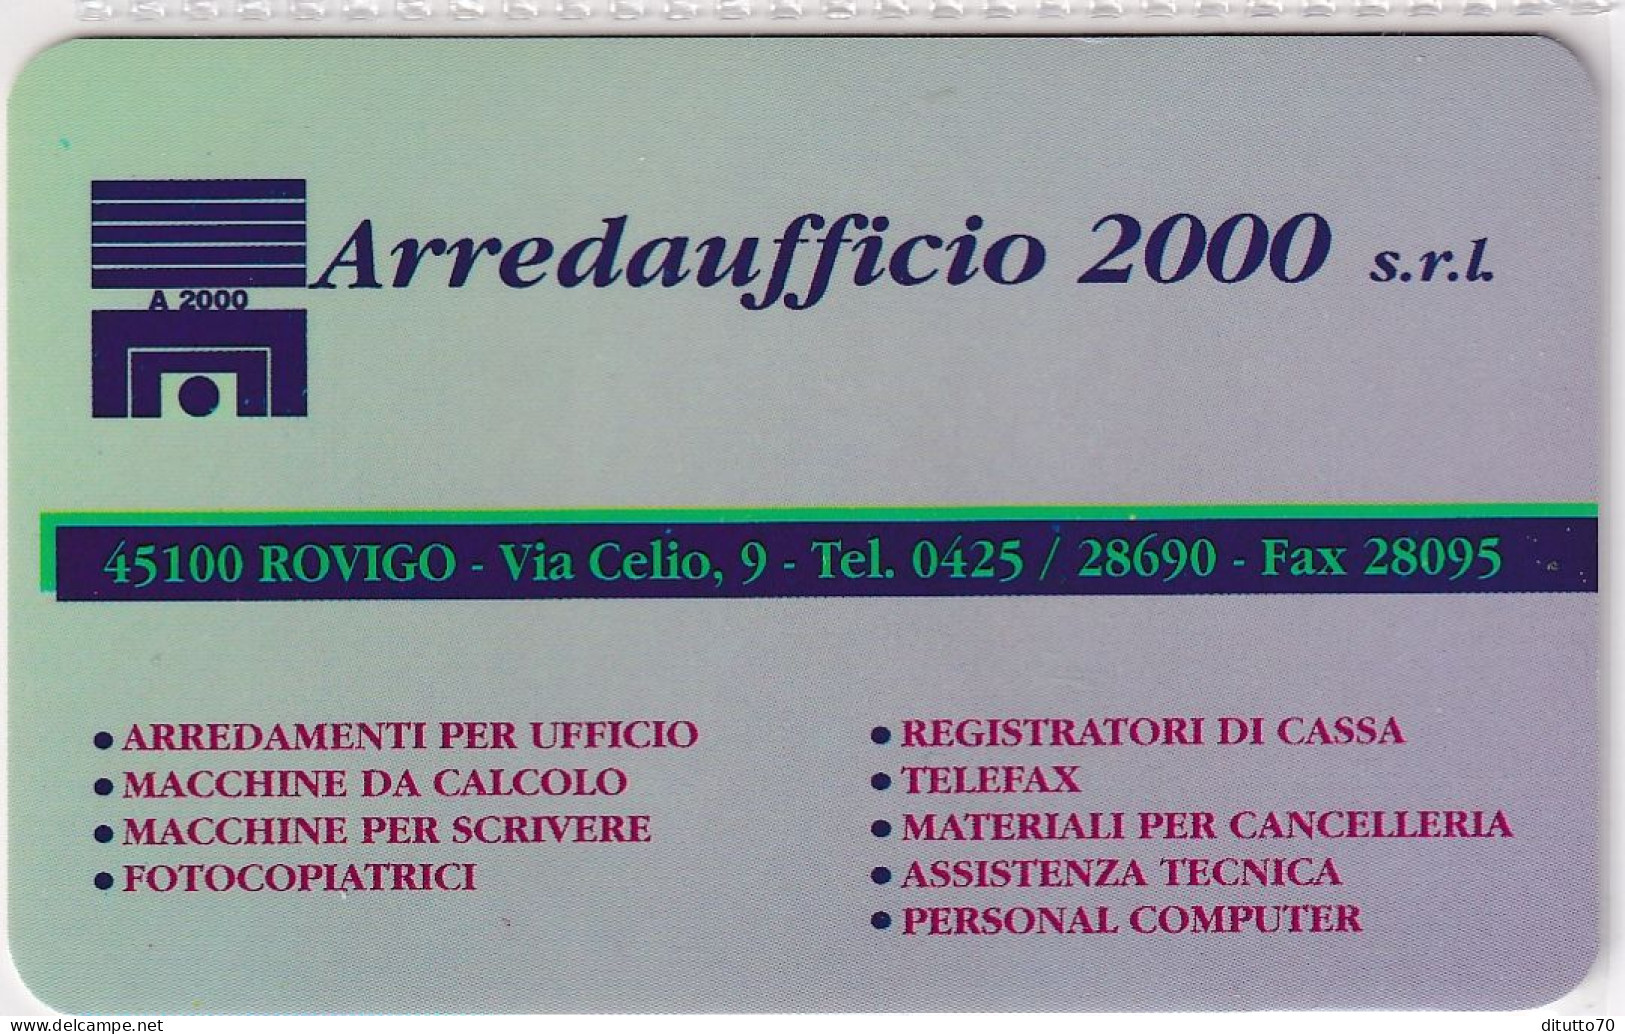 Calendarietto - Arredaufficio - Rovigo - Anno 1997 - Small : 1991-00